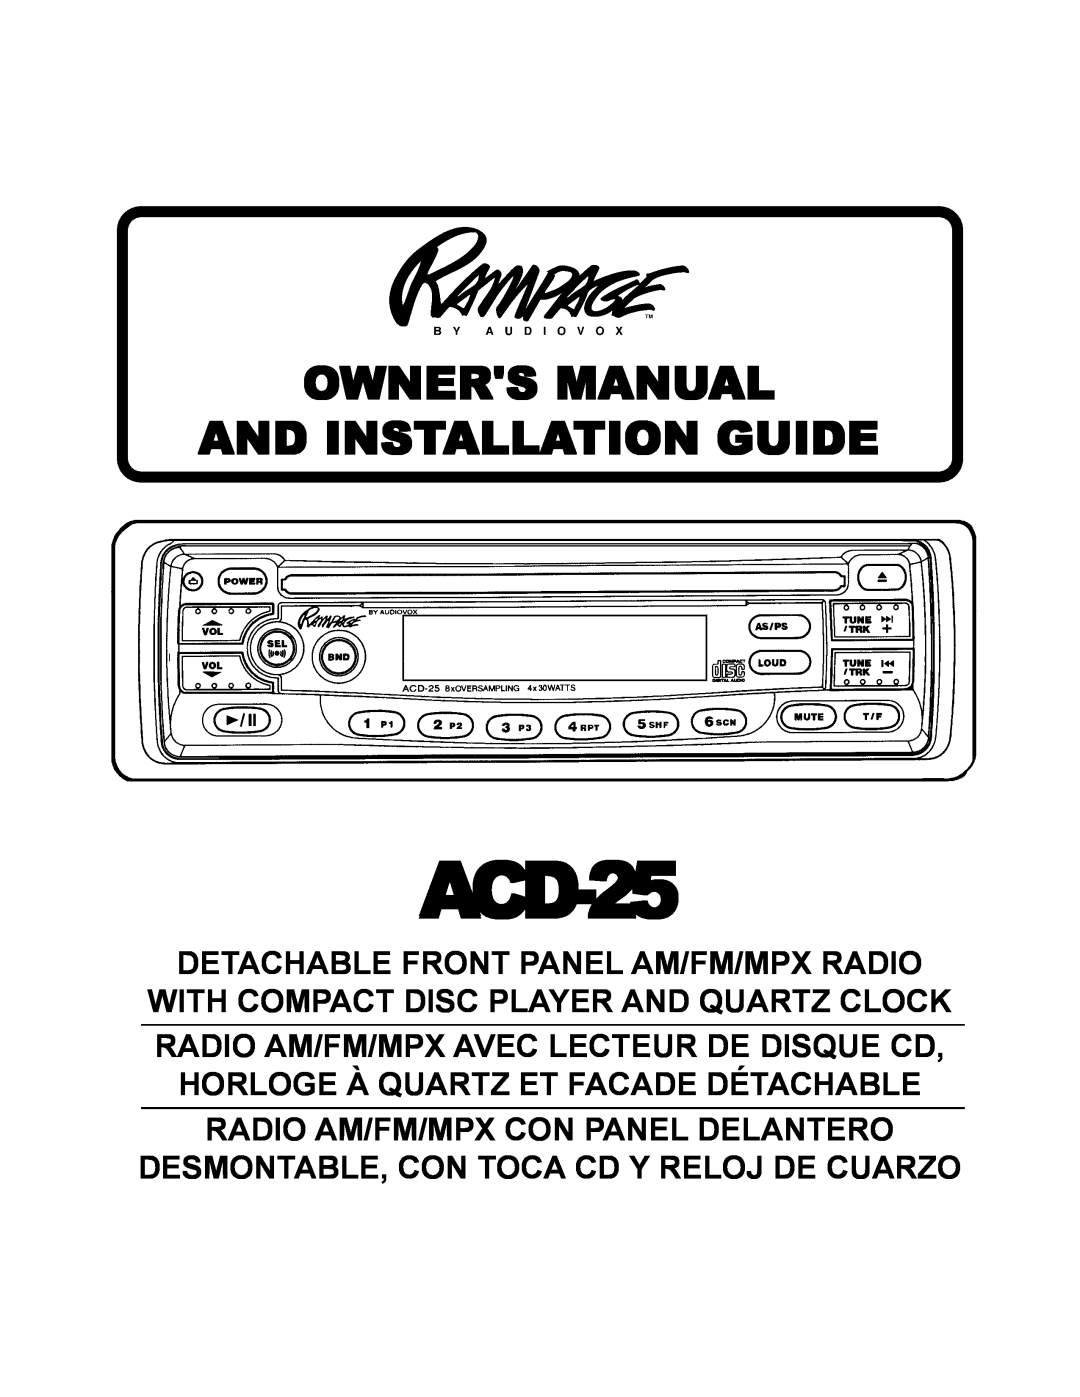 Audiovox ACD-25 manual Radio Am/Fm/Mpx Con Panel Delantero, Desmontable, Con Toca Cd Y Reloj De Cuarzo 